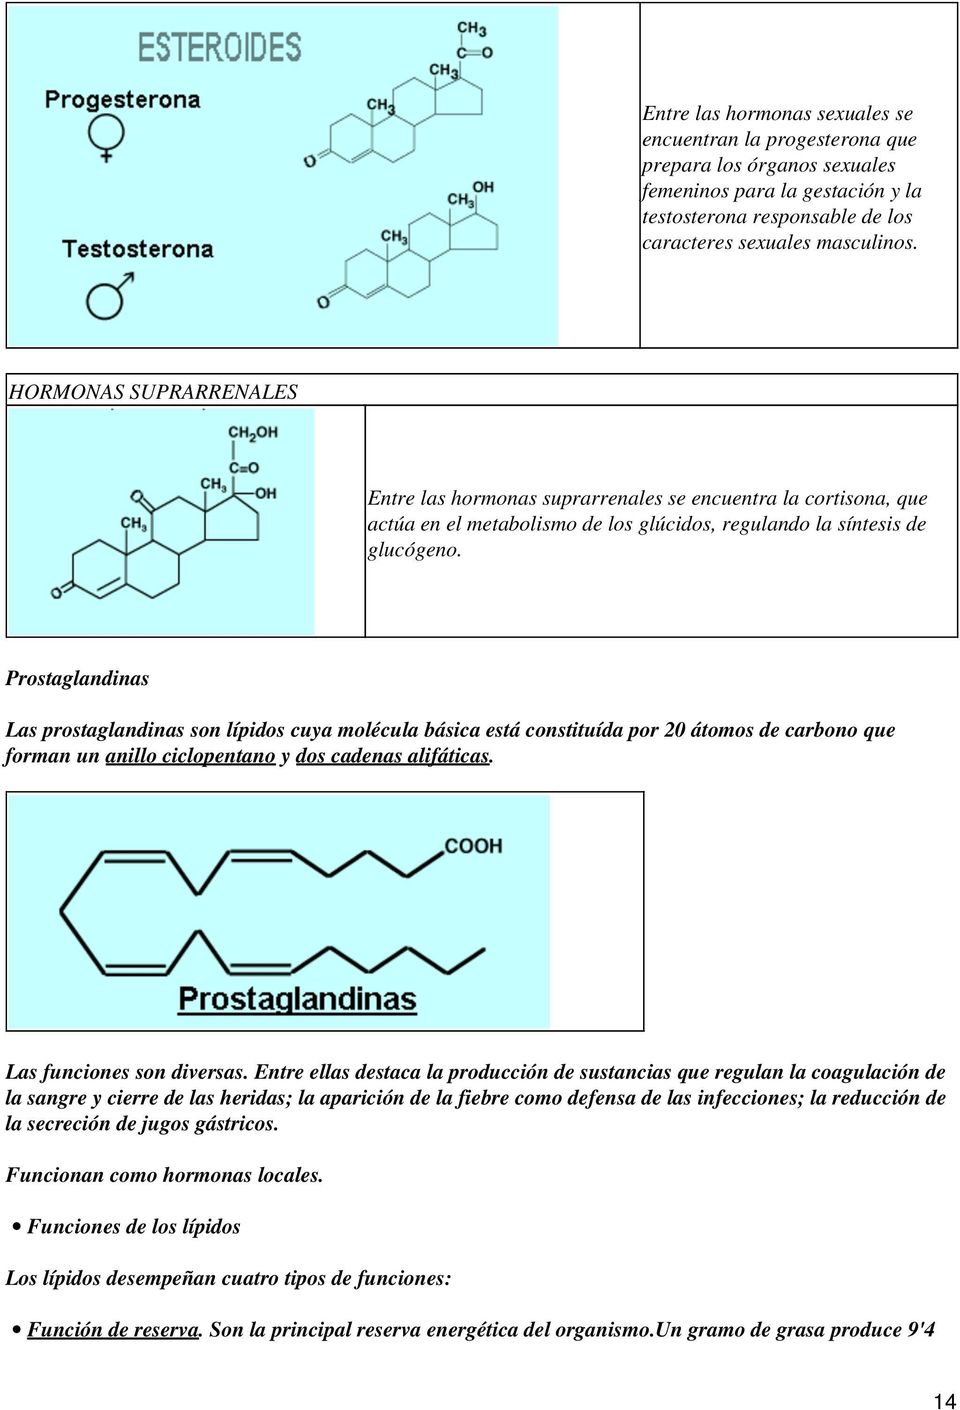 Prostaglandinas Las prostaglandinas son lípidos cuya molécula básica está constituída por 20 átomos de carbono que forman un anillo ciclopentano y dos cadenas alifáticas. Las funciones son diversas.